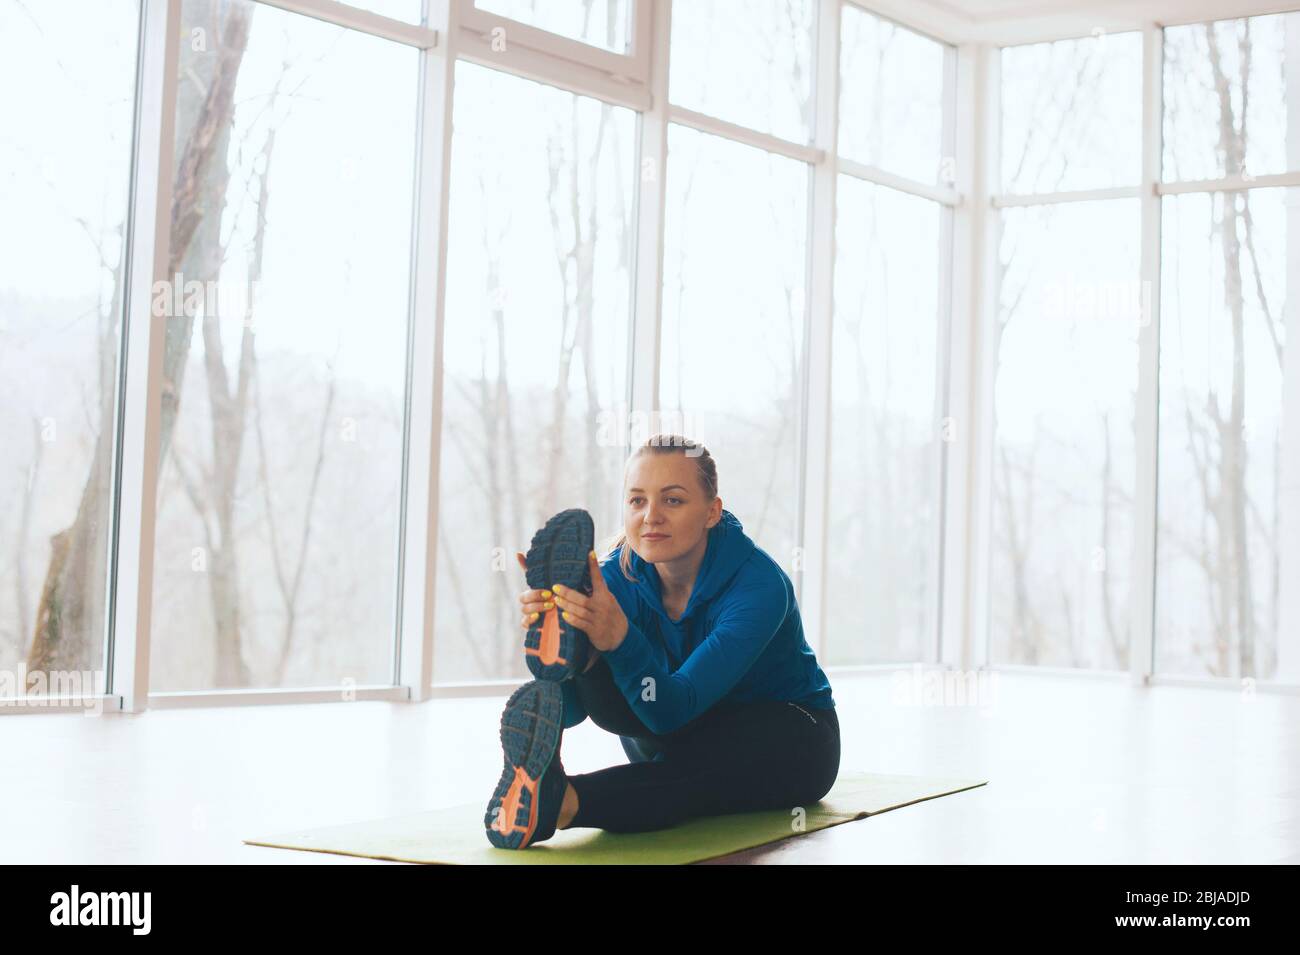 La donna concentrata sta facendo un po' di stretching sul pavimento in una stanza piena di luce e finestre. Foto Stock